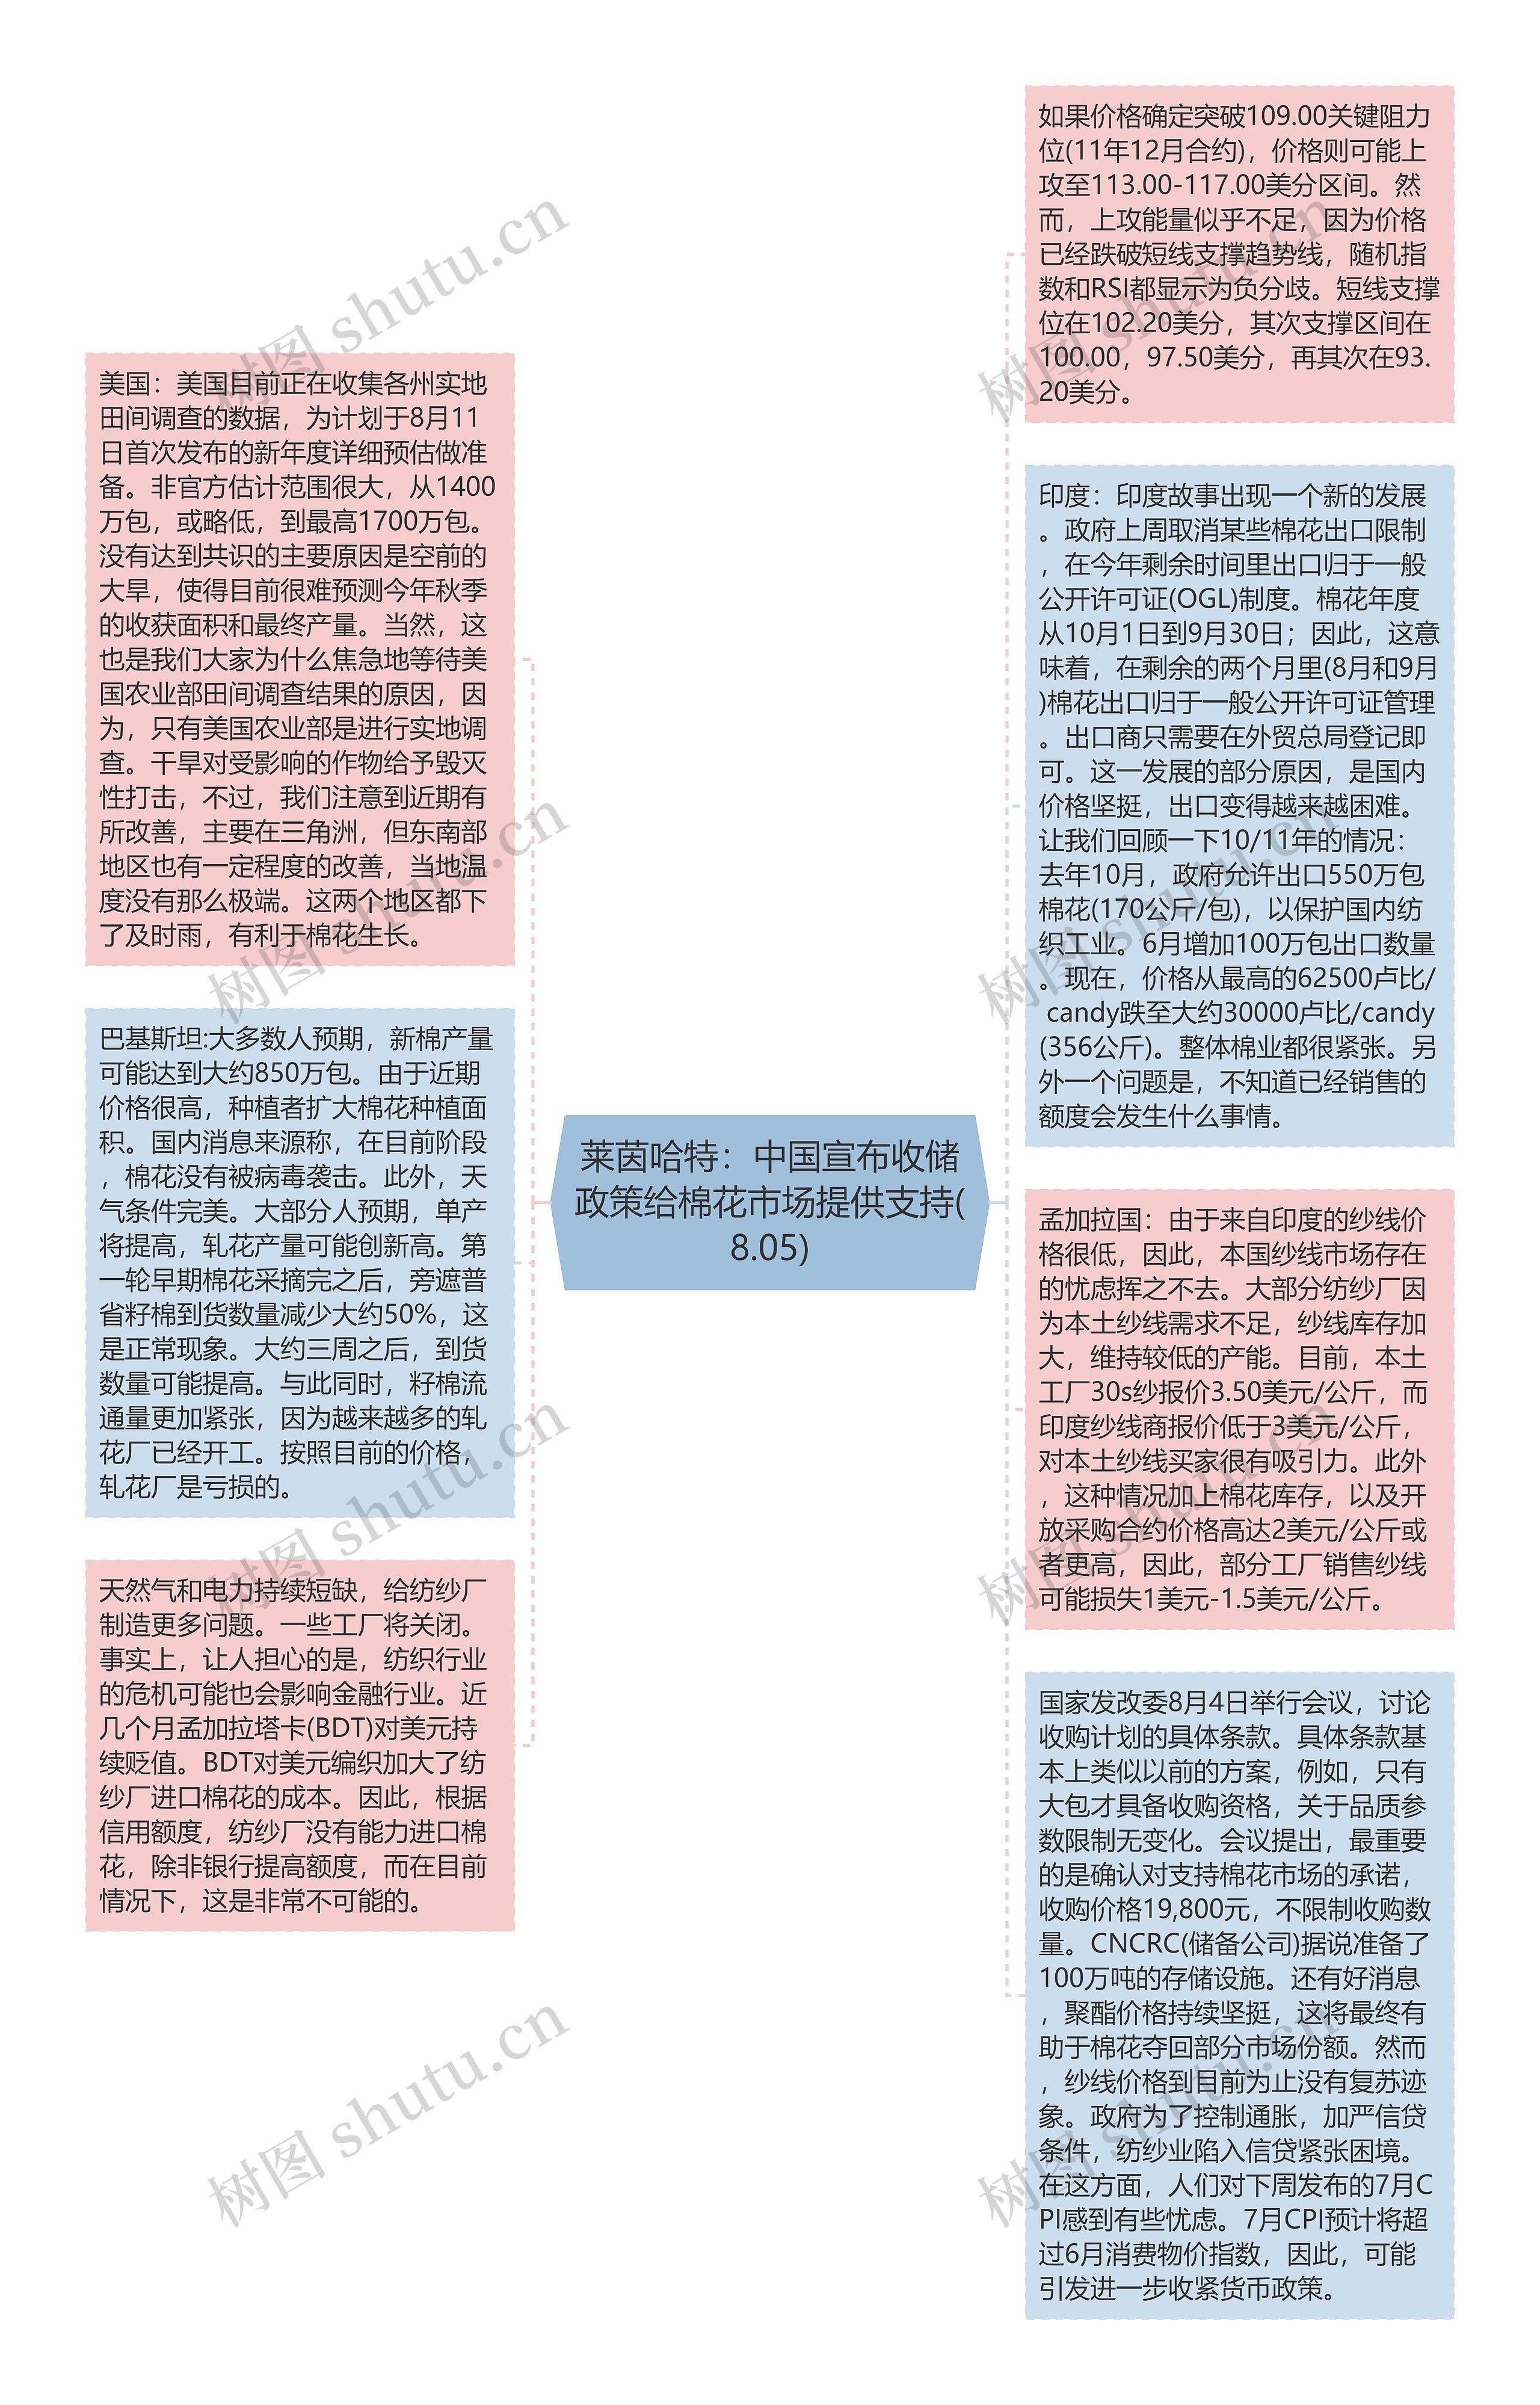 莱茵哈特：中国宣布收储政策给棉花市场提供支持(8.05)思维导图